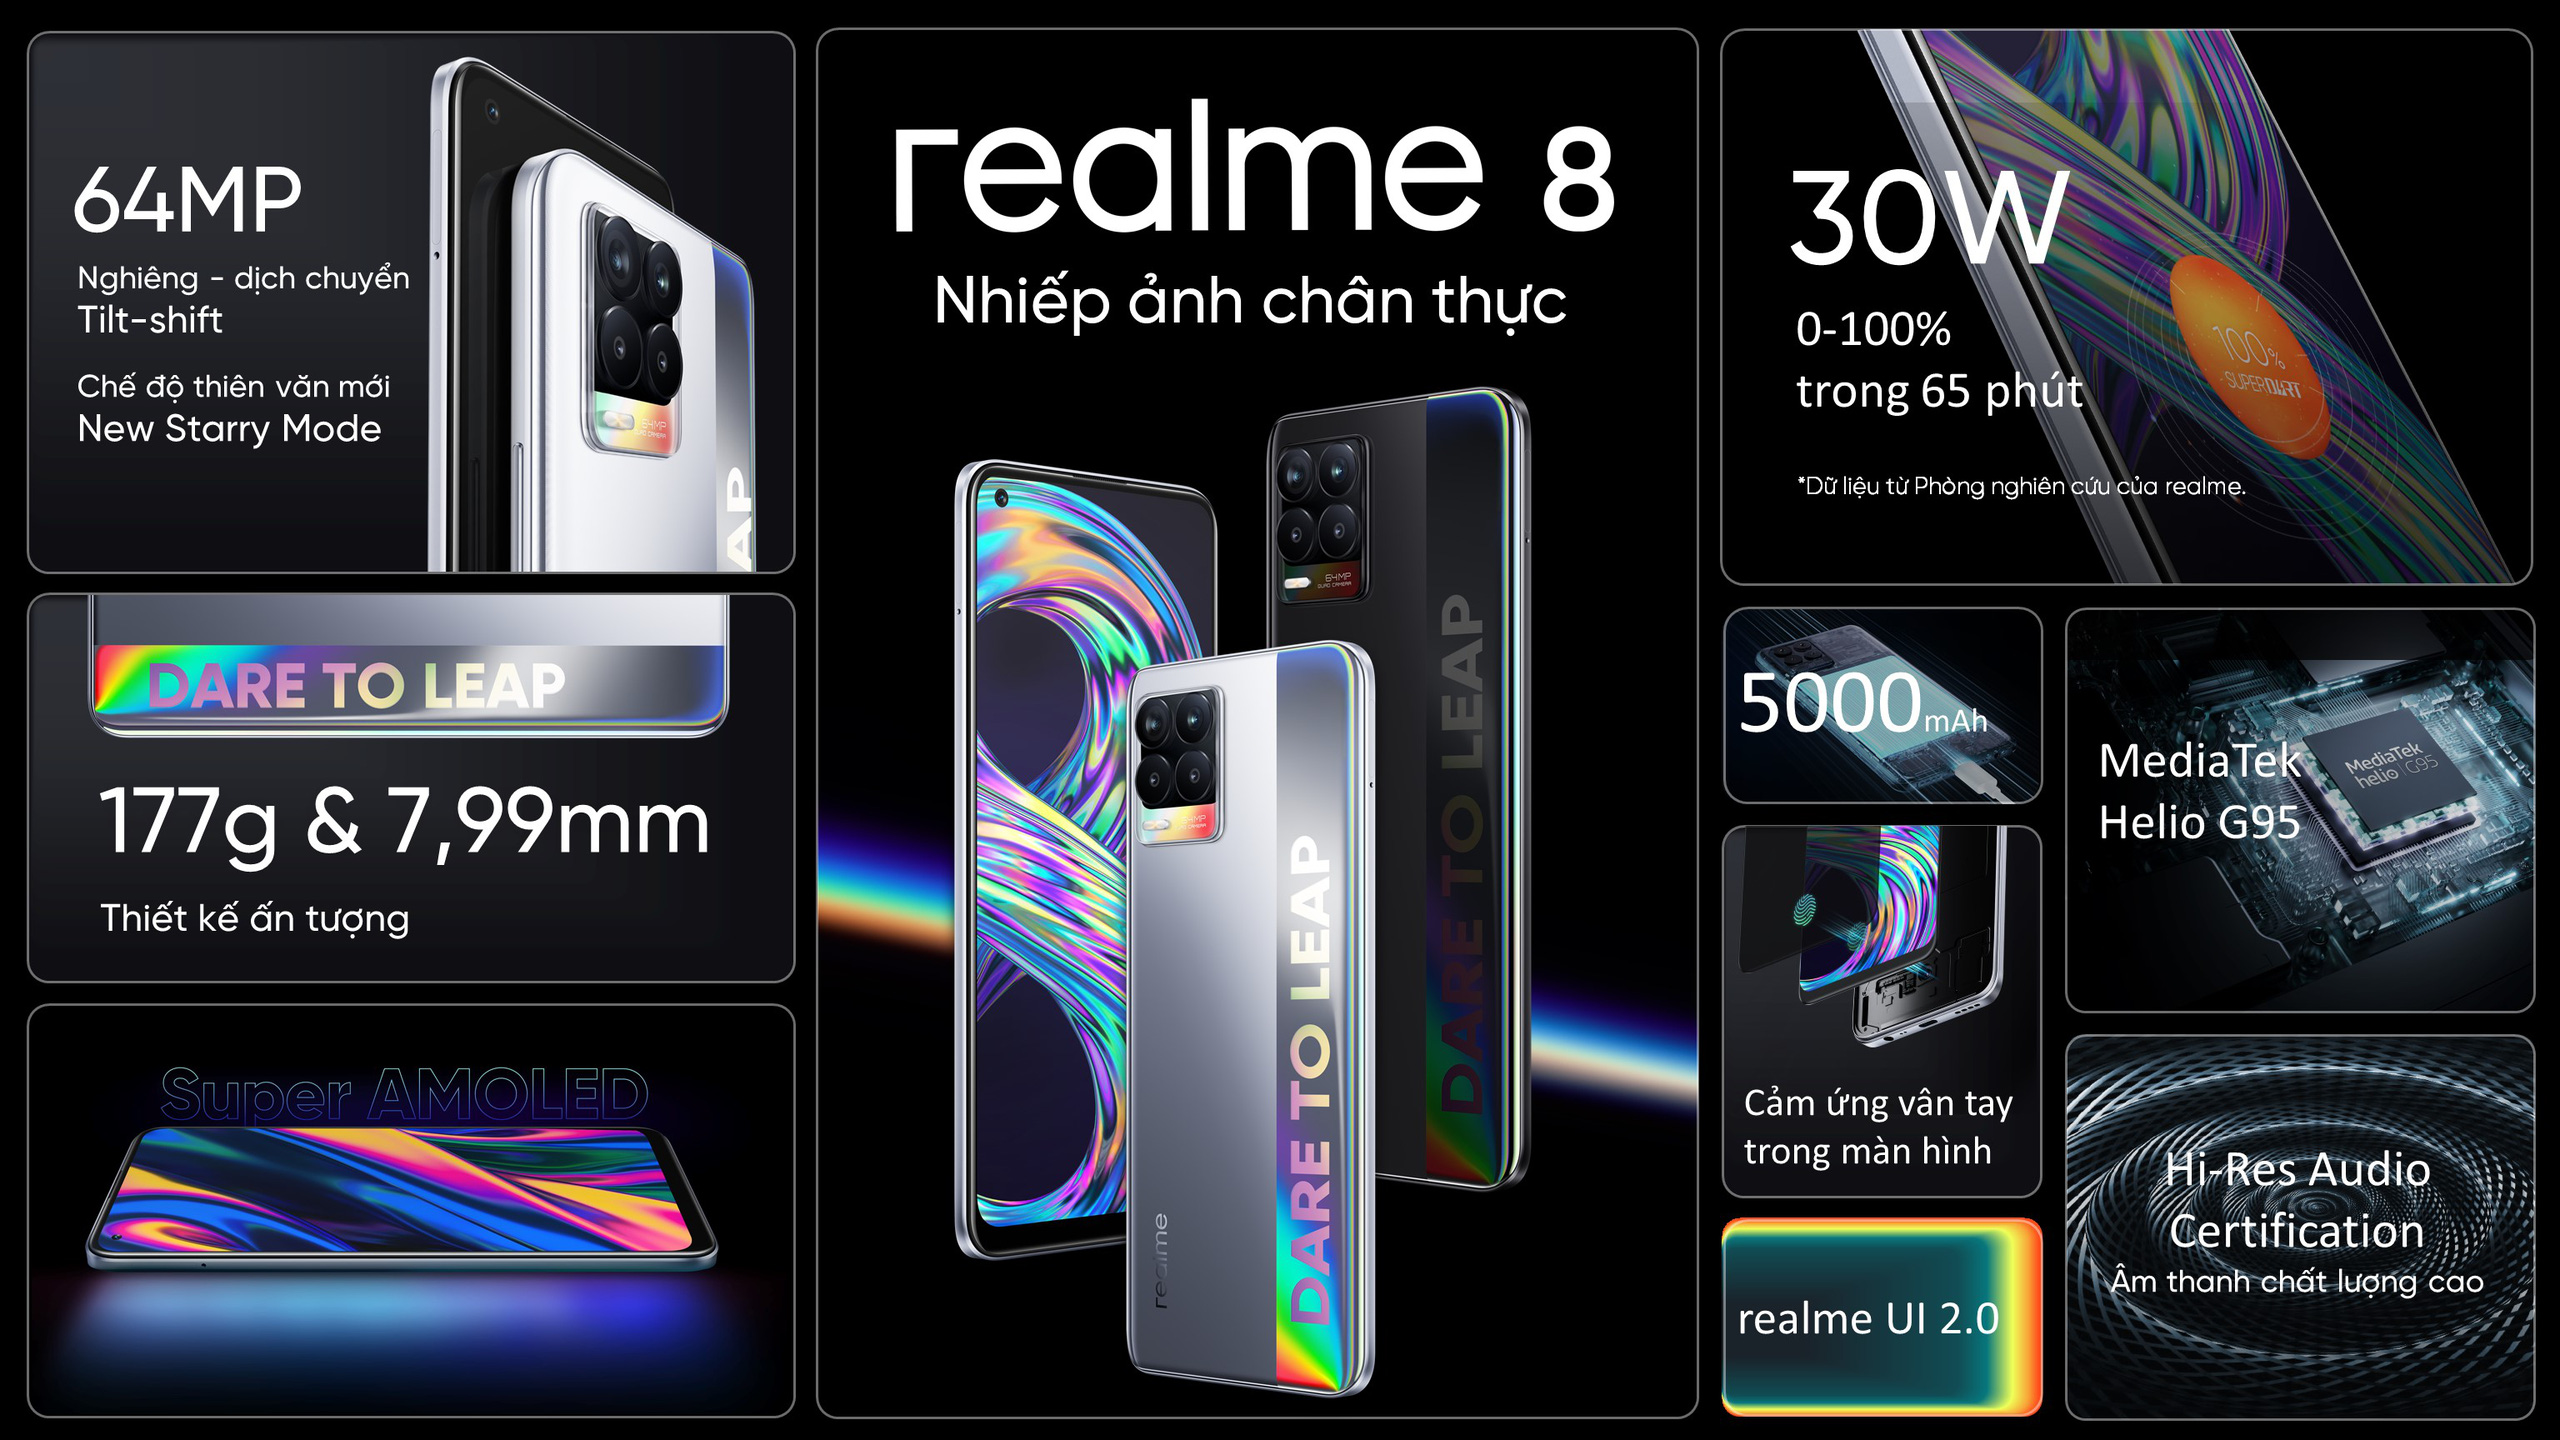 Điện thoại realme 8 series ra mắt với camera siêu rõ nét, thời gian chờ lên tới 2 ngày với chỉ 5% pin - Ảnh 11.